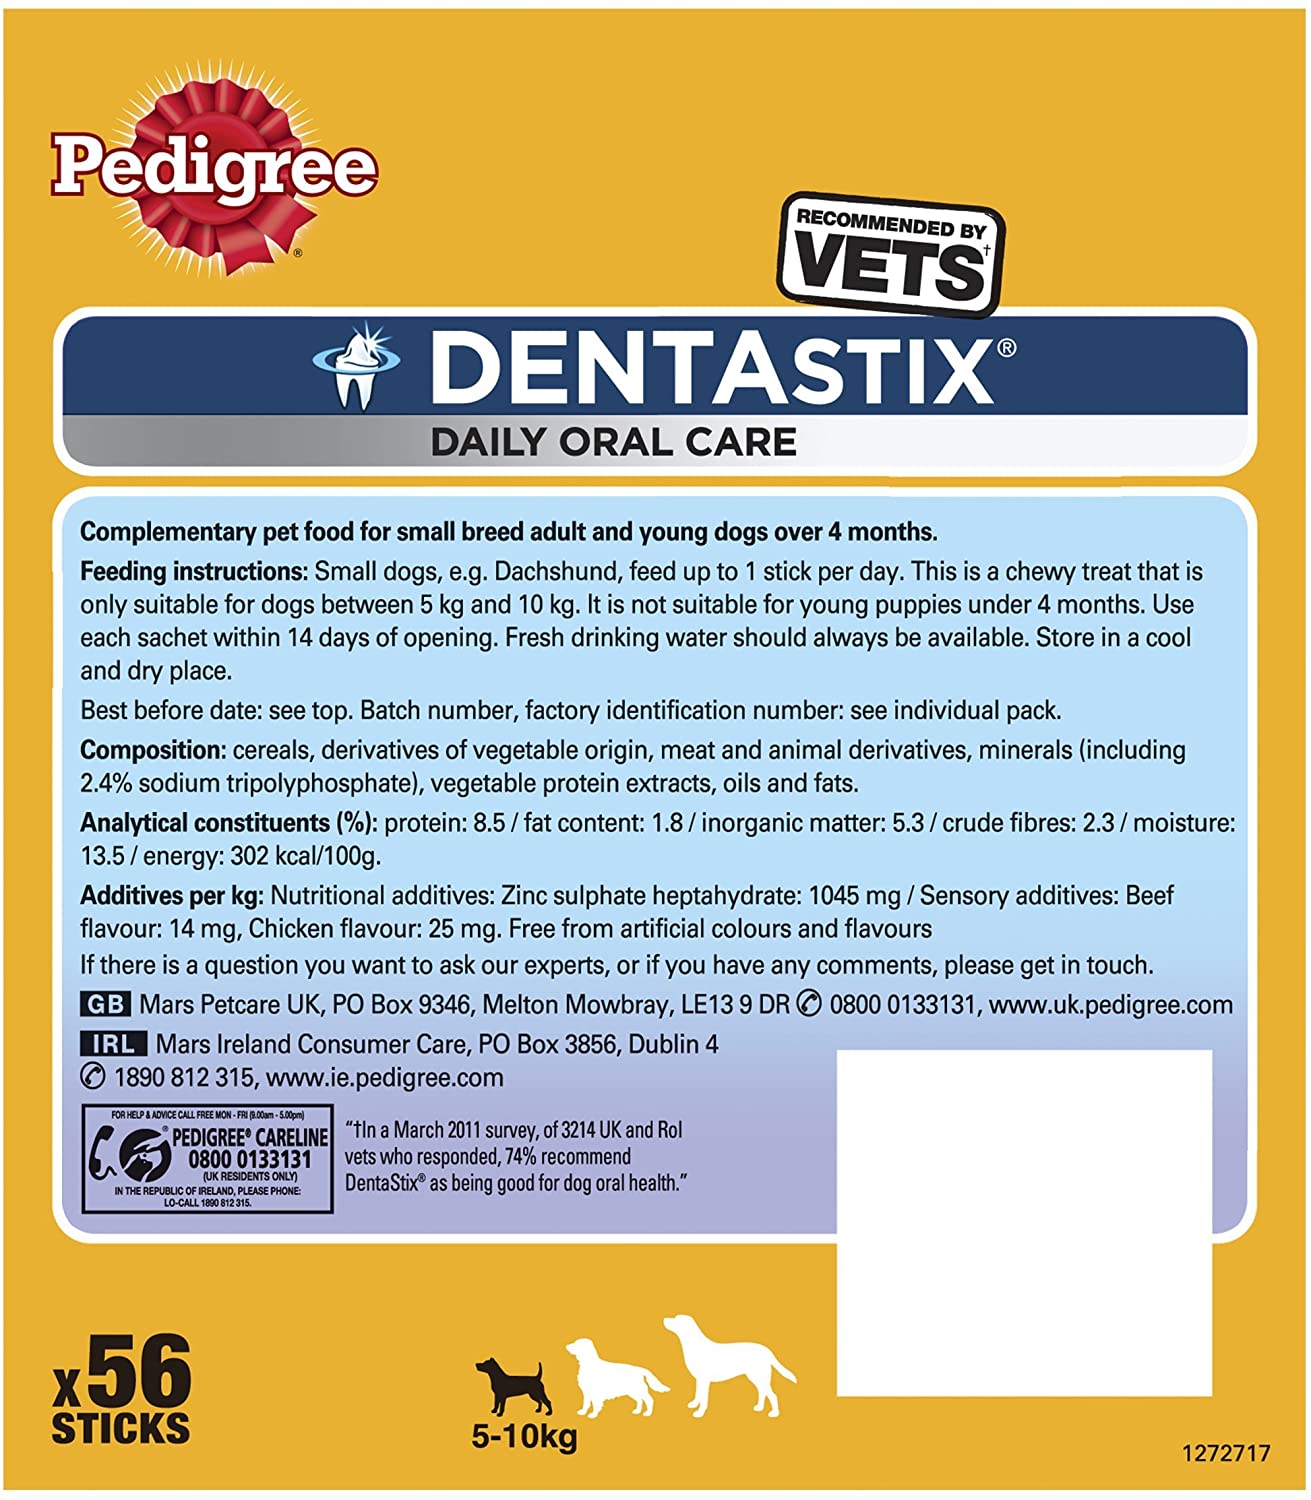  Pedigree Dentastix Diario Oral Cuidado Perro Pequeño 5-10 K G, 56 palitos, pack de 1 